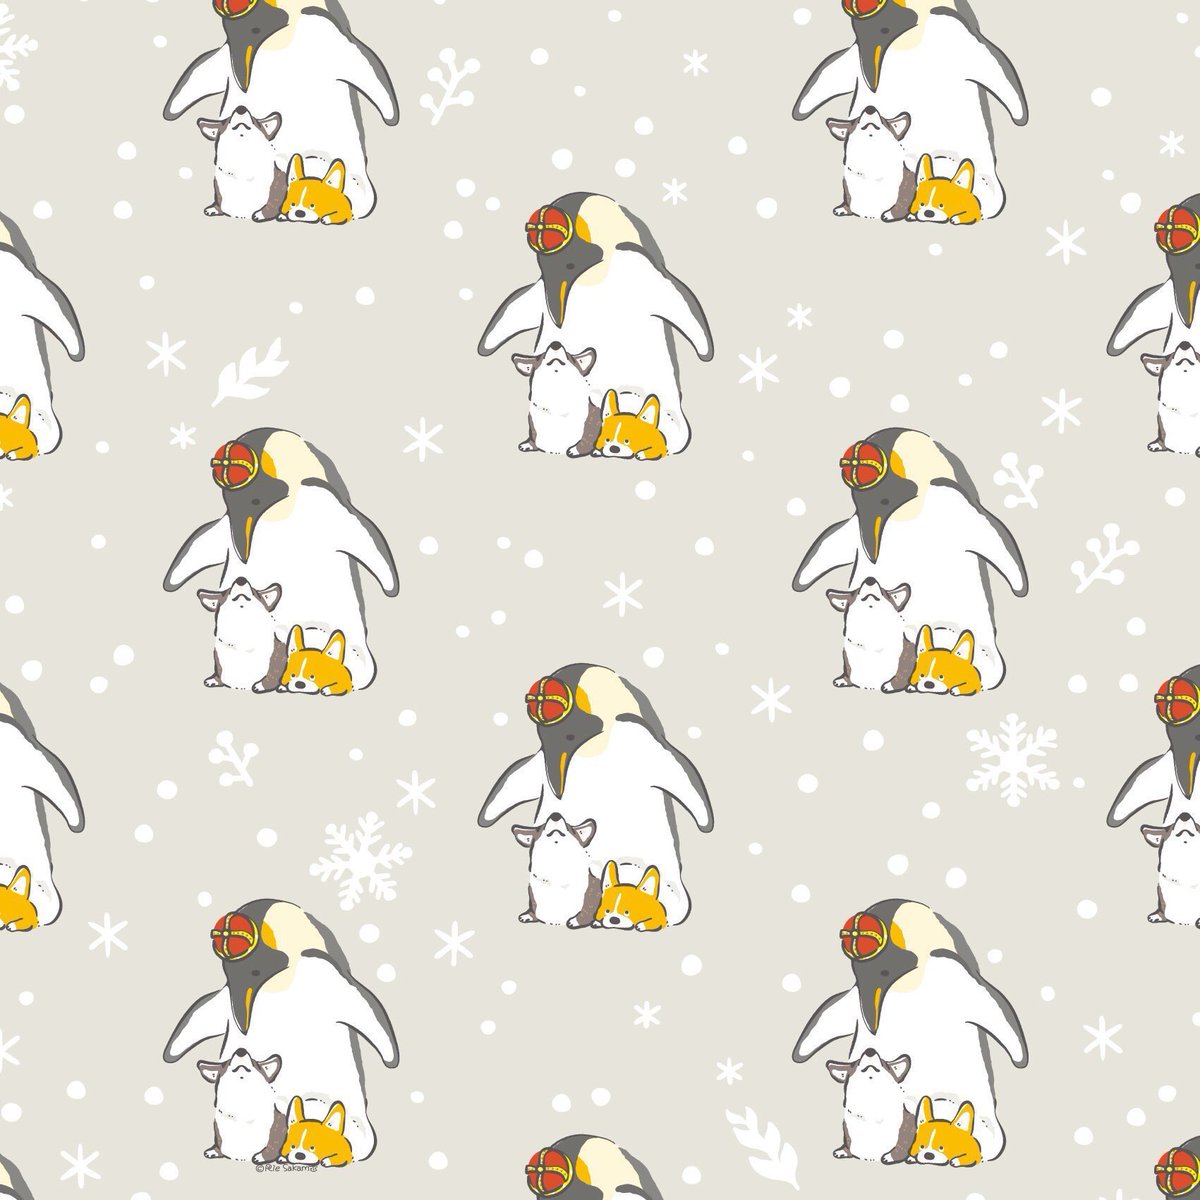 「世界ペンギンの日のコーギー
#世界ペンギンの日 #コーギー 」|サカモトリエ/イラストレーターのイラスト